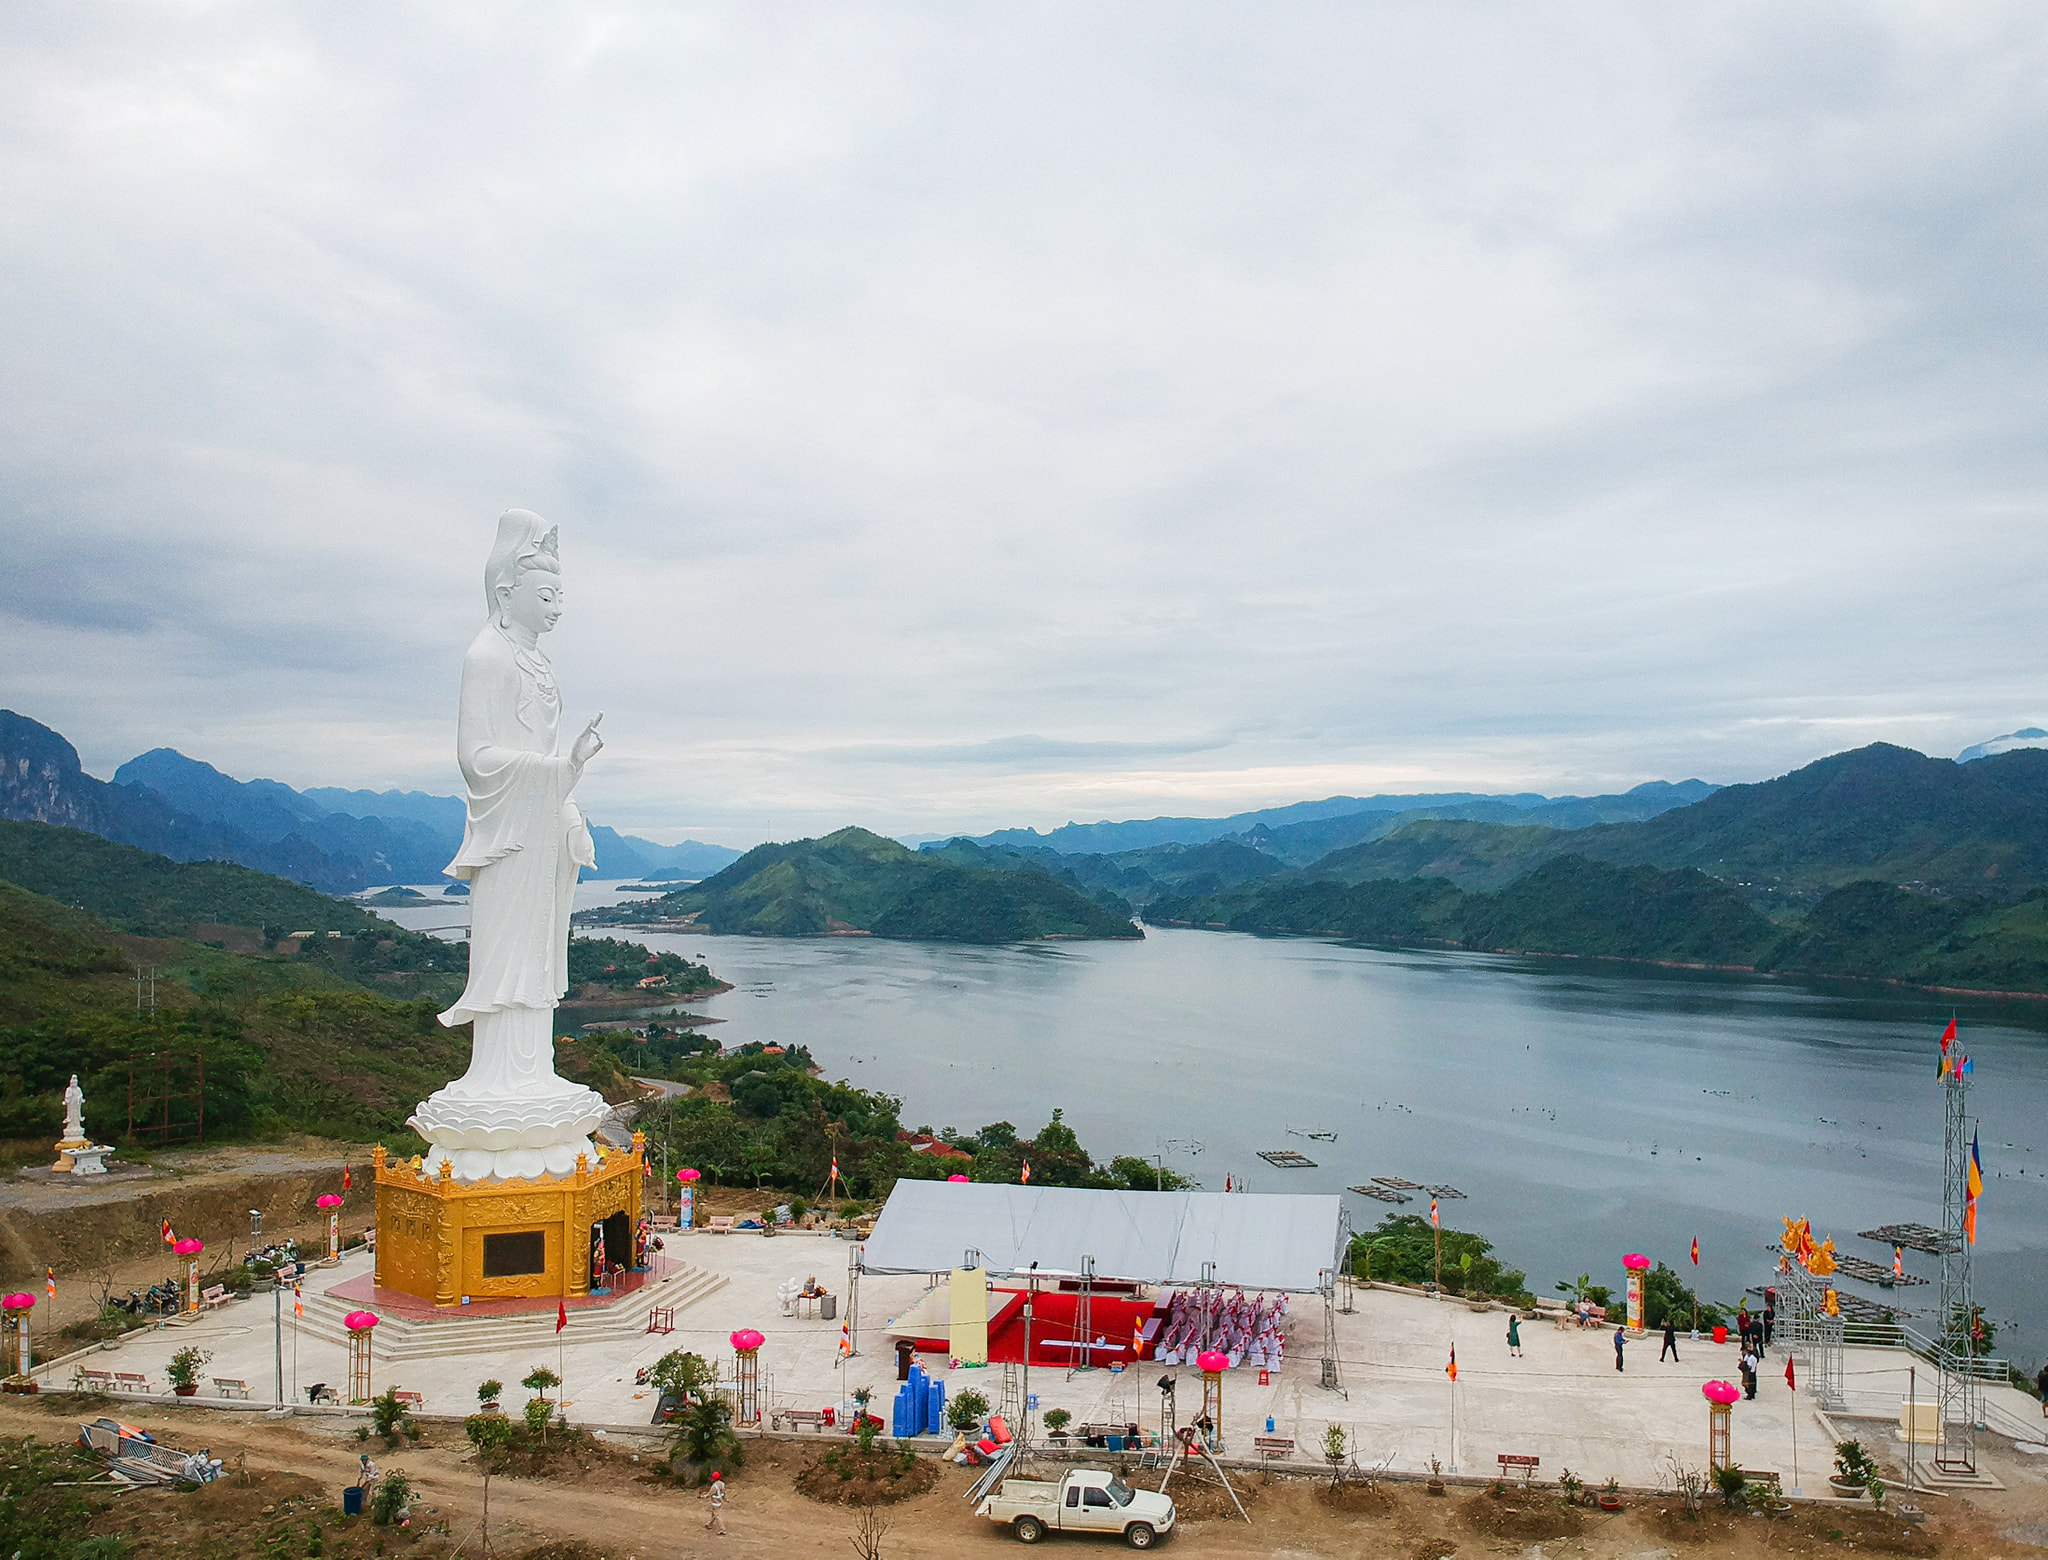 Tượng Phật Bà được xây dựng trong một đống đổ nát.  Hình ảnh: Bộ sưu tập